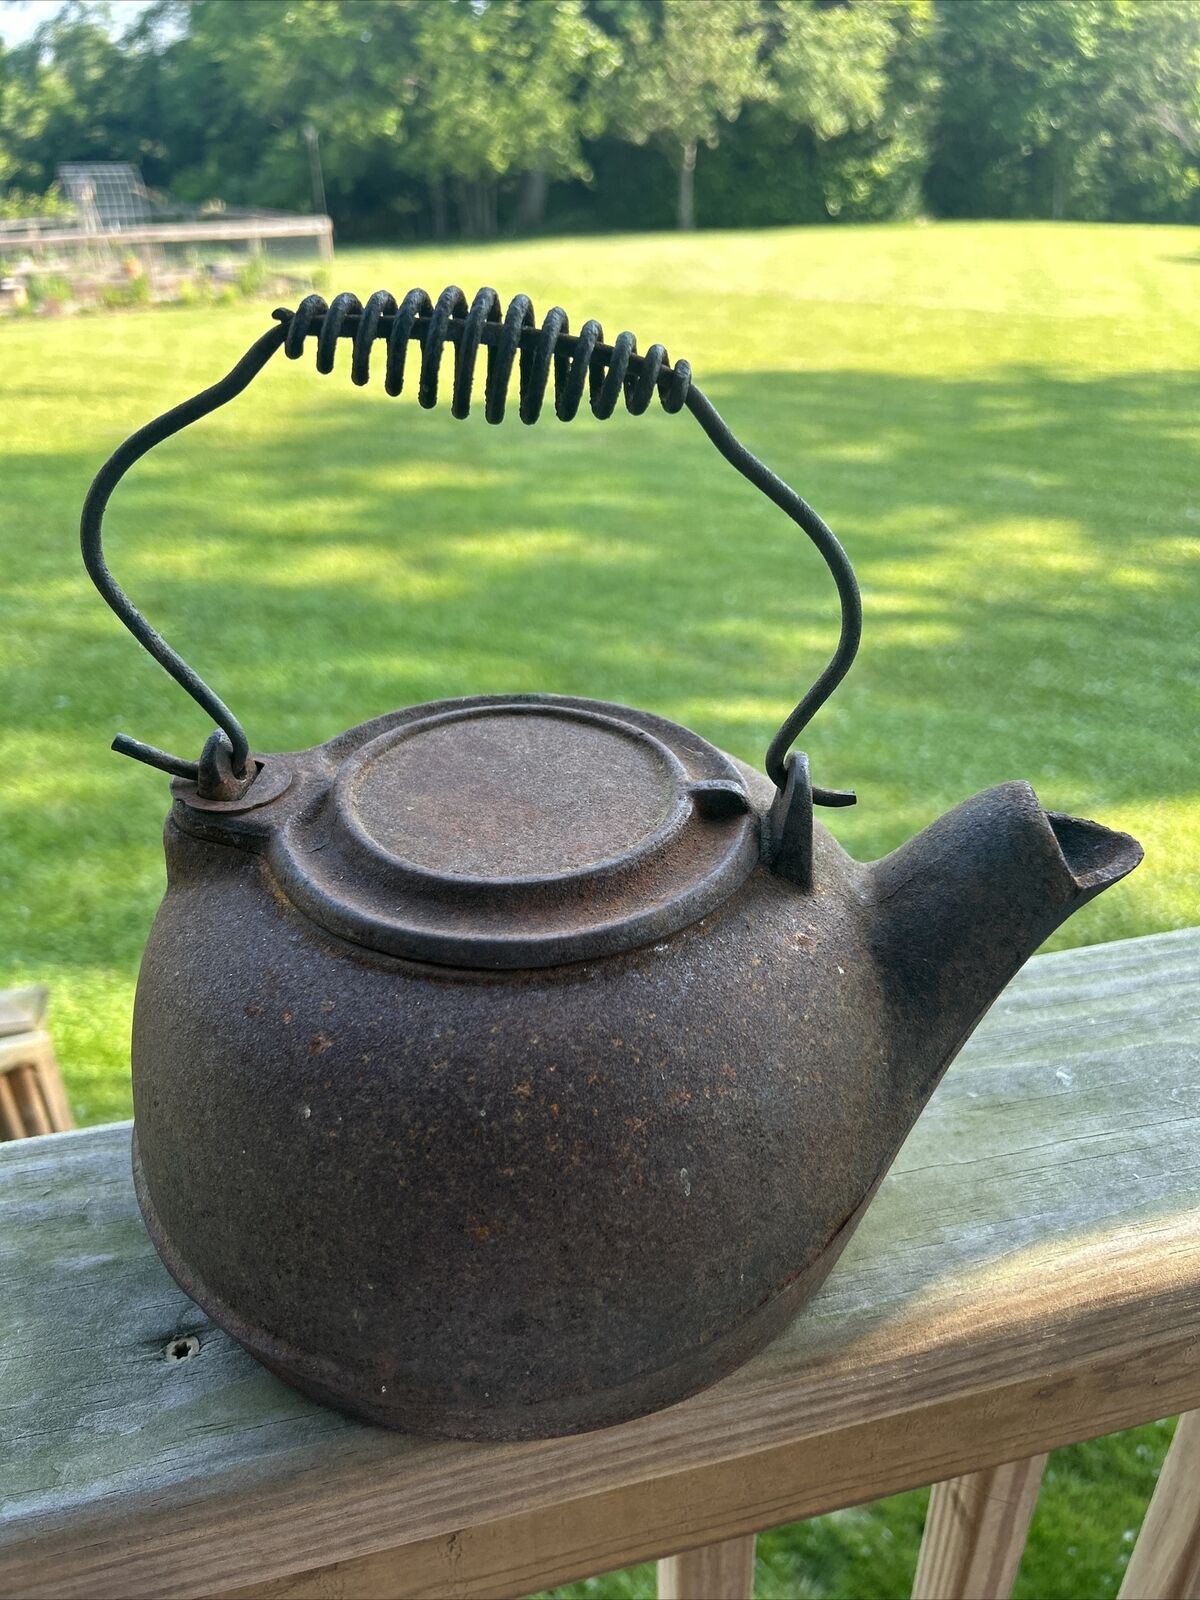 Vintage Cast Iron Teapot Tea Kettle Pot Swivel Lid Rustic Primitive Camping Fire